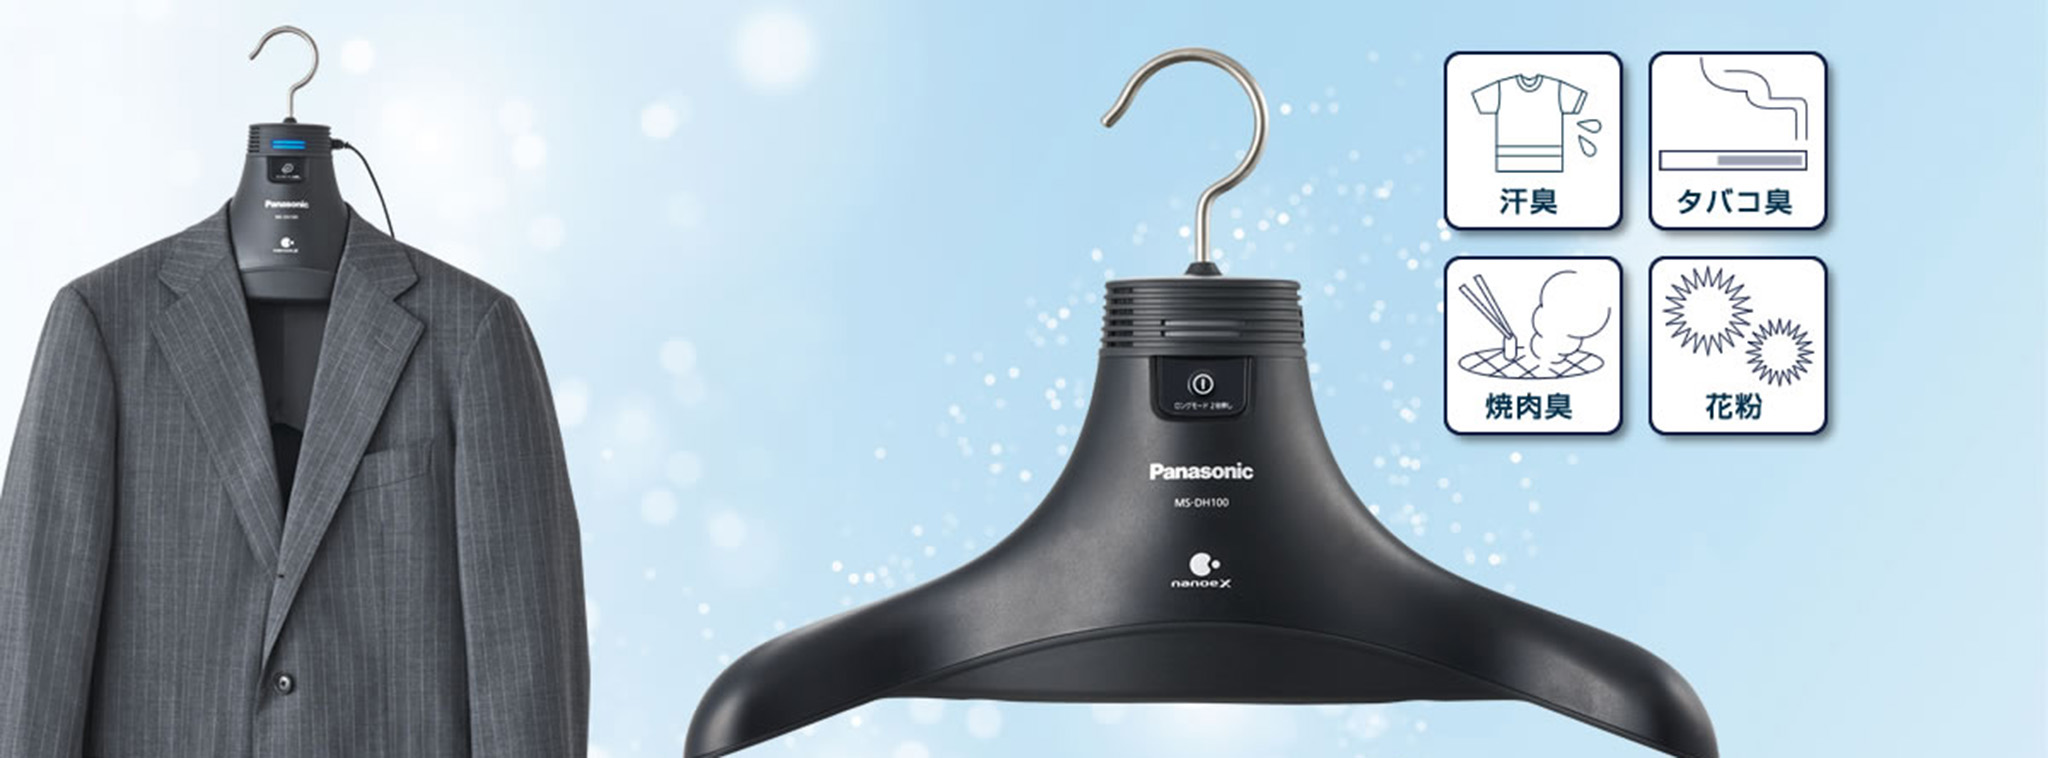 Panasonic giới thiệu móc treo đồ khử mùi áo quần, cần điện để hoạt động, giá $179